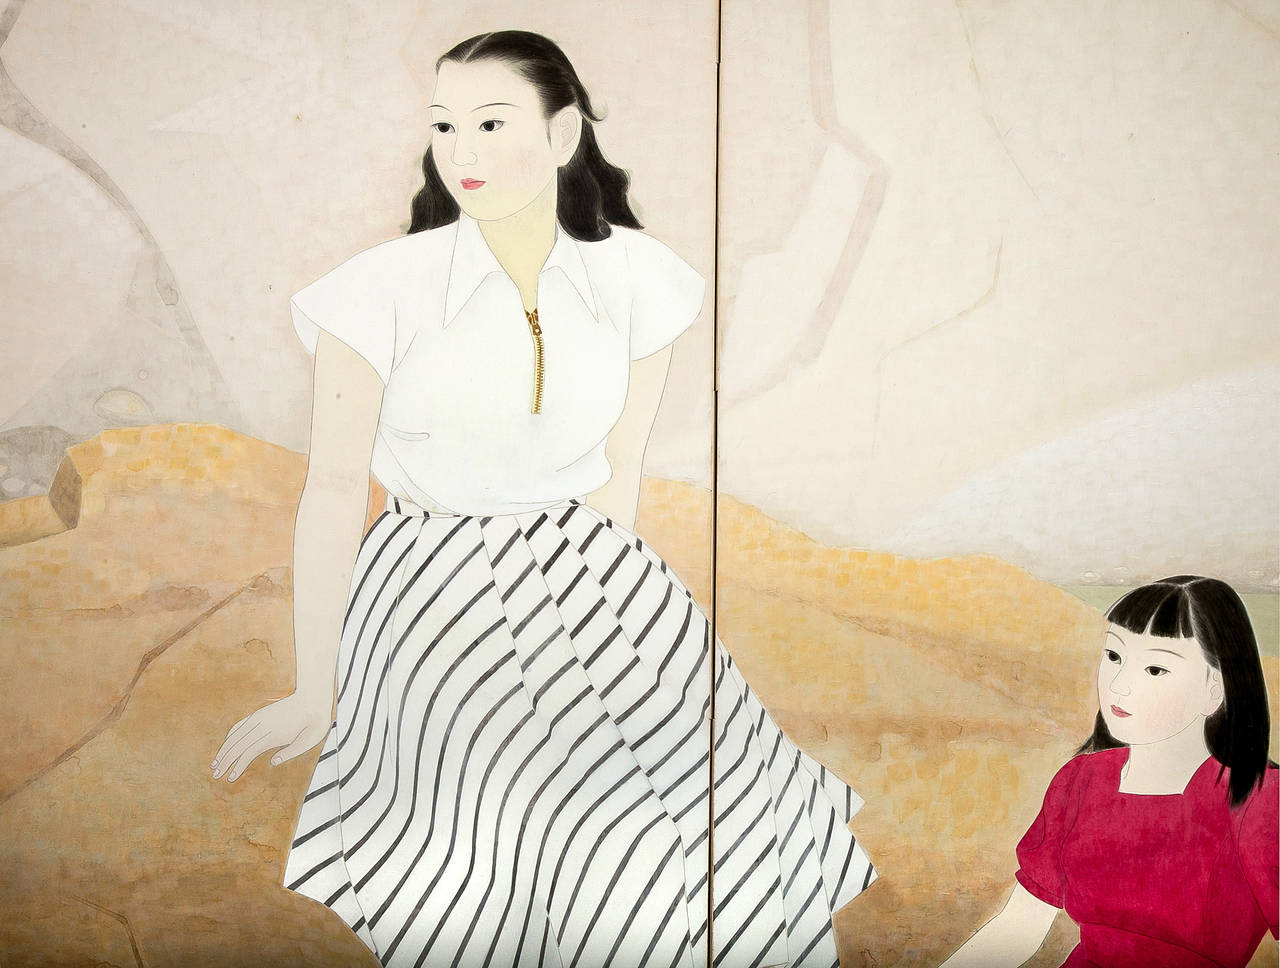 Biombo japonés de dos paneles: Mujeres vestidas a la occidental, pintura de estilo Nihonga de dos mujeres jóvenes vestidas a la occidental en verano, sentadas a la orilla del agua y refrescándose metiendo los pies en el agua.  Pintura del periodo